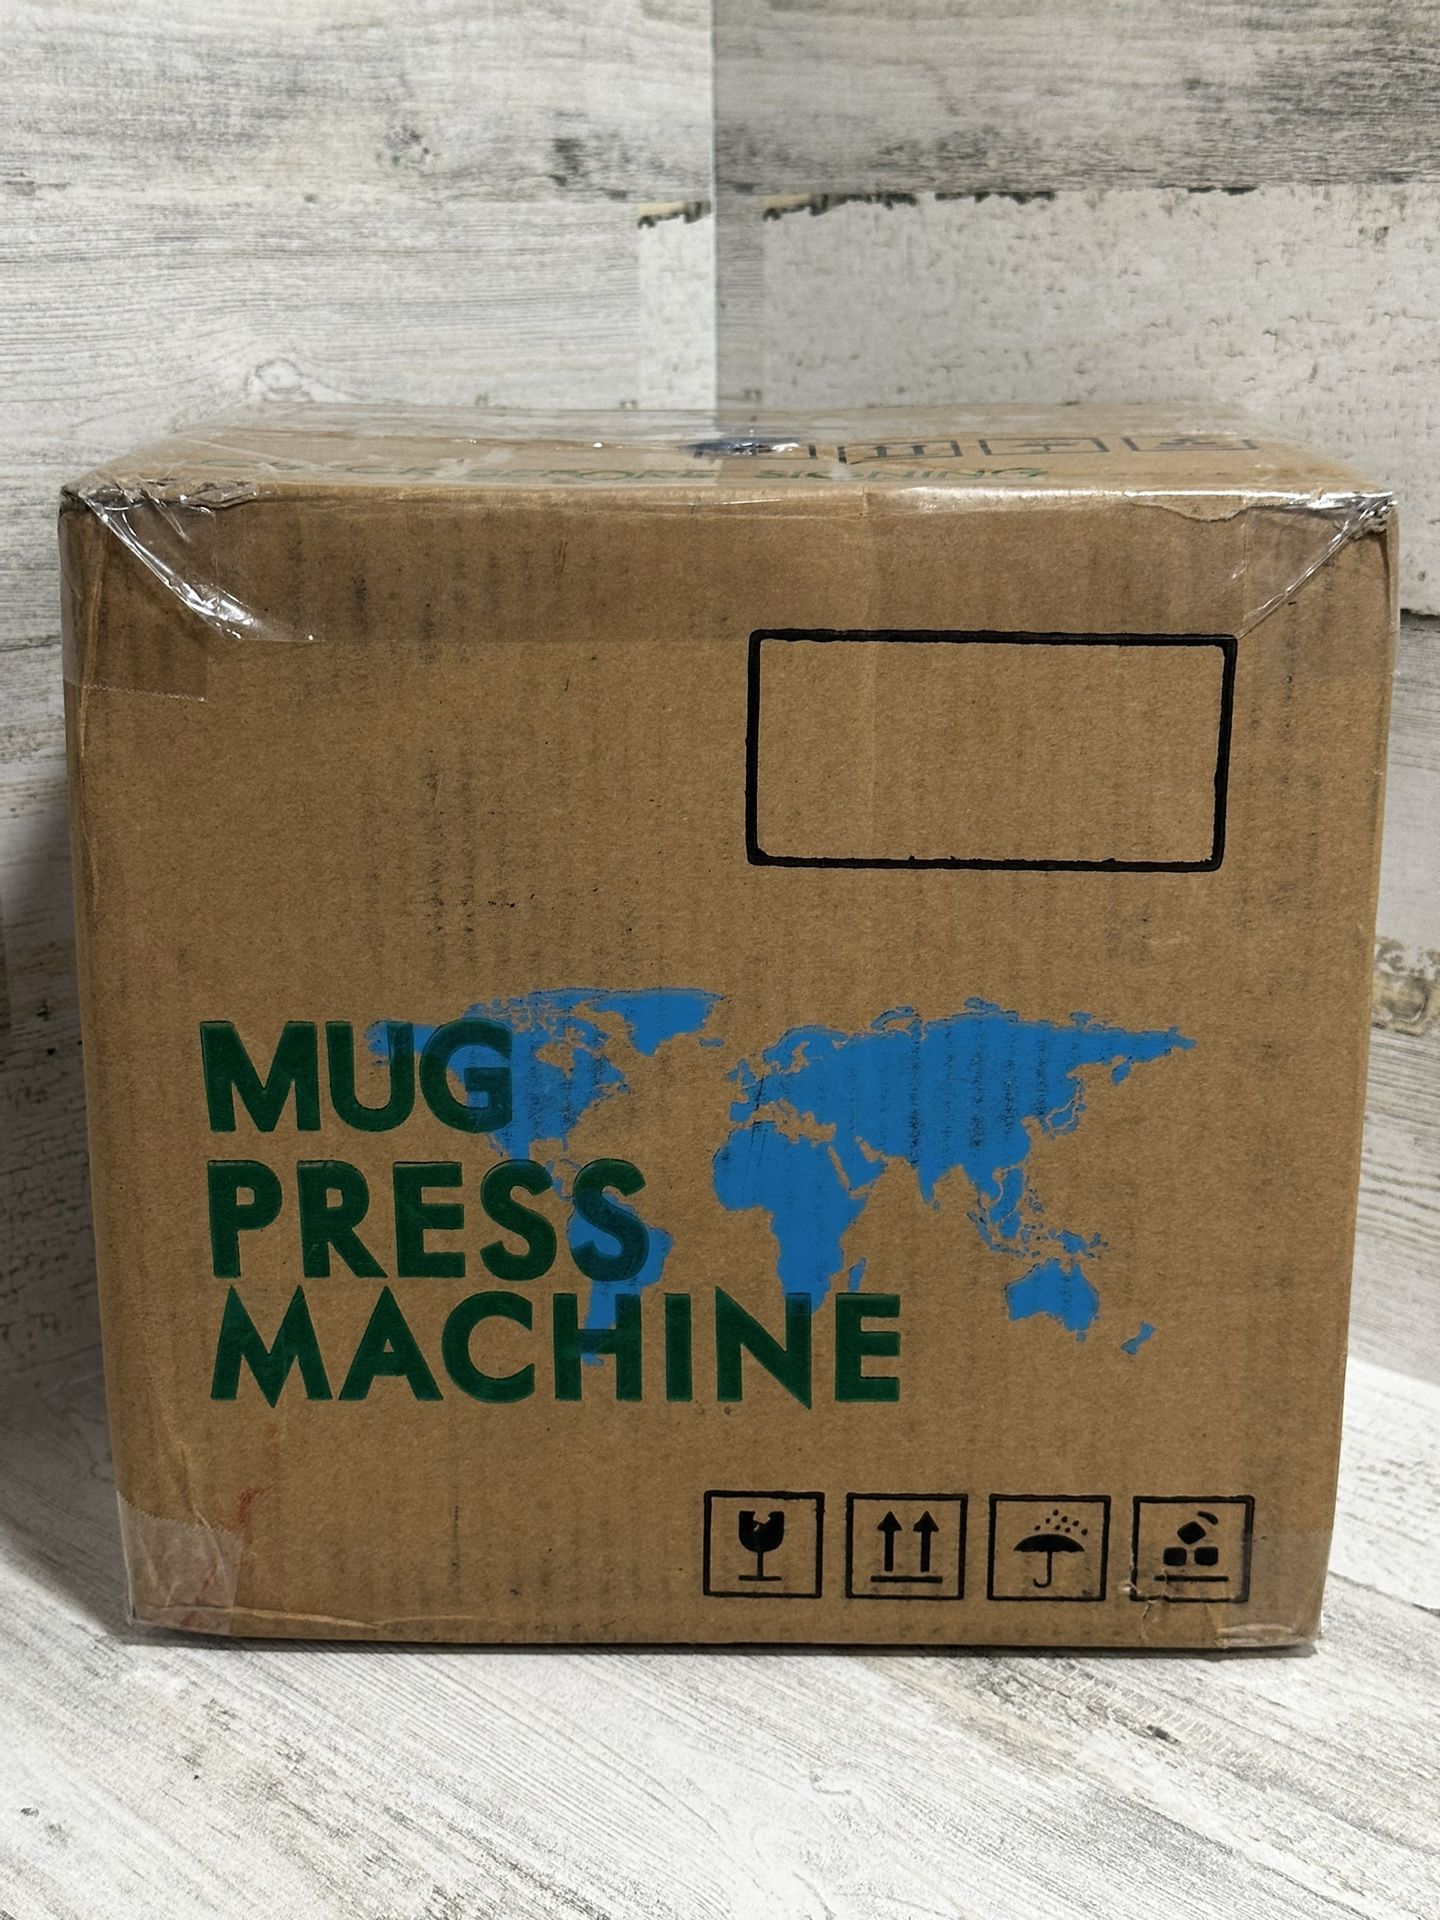 Mug Press Machine - Model AP2209 - 110V 60Hz Serial No. 10192 Work No. A02 - NEW!!!